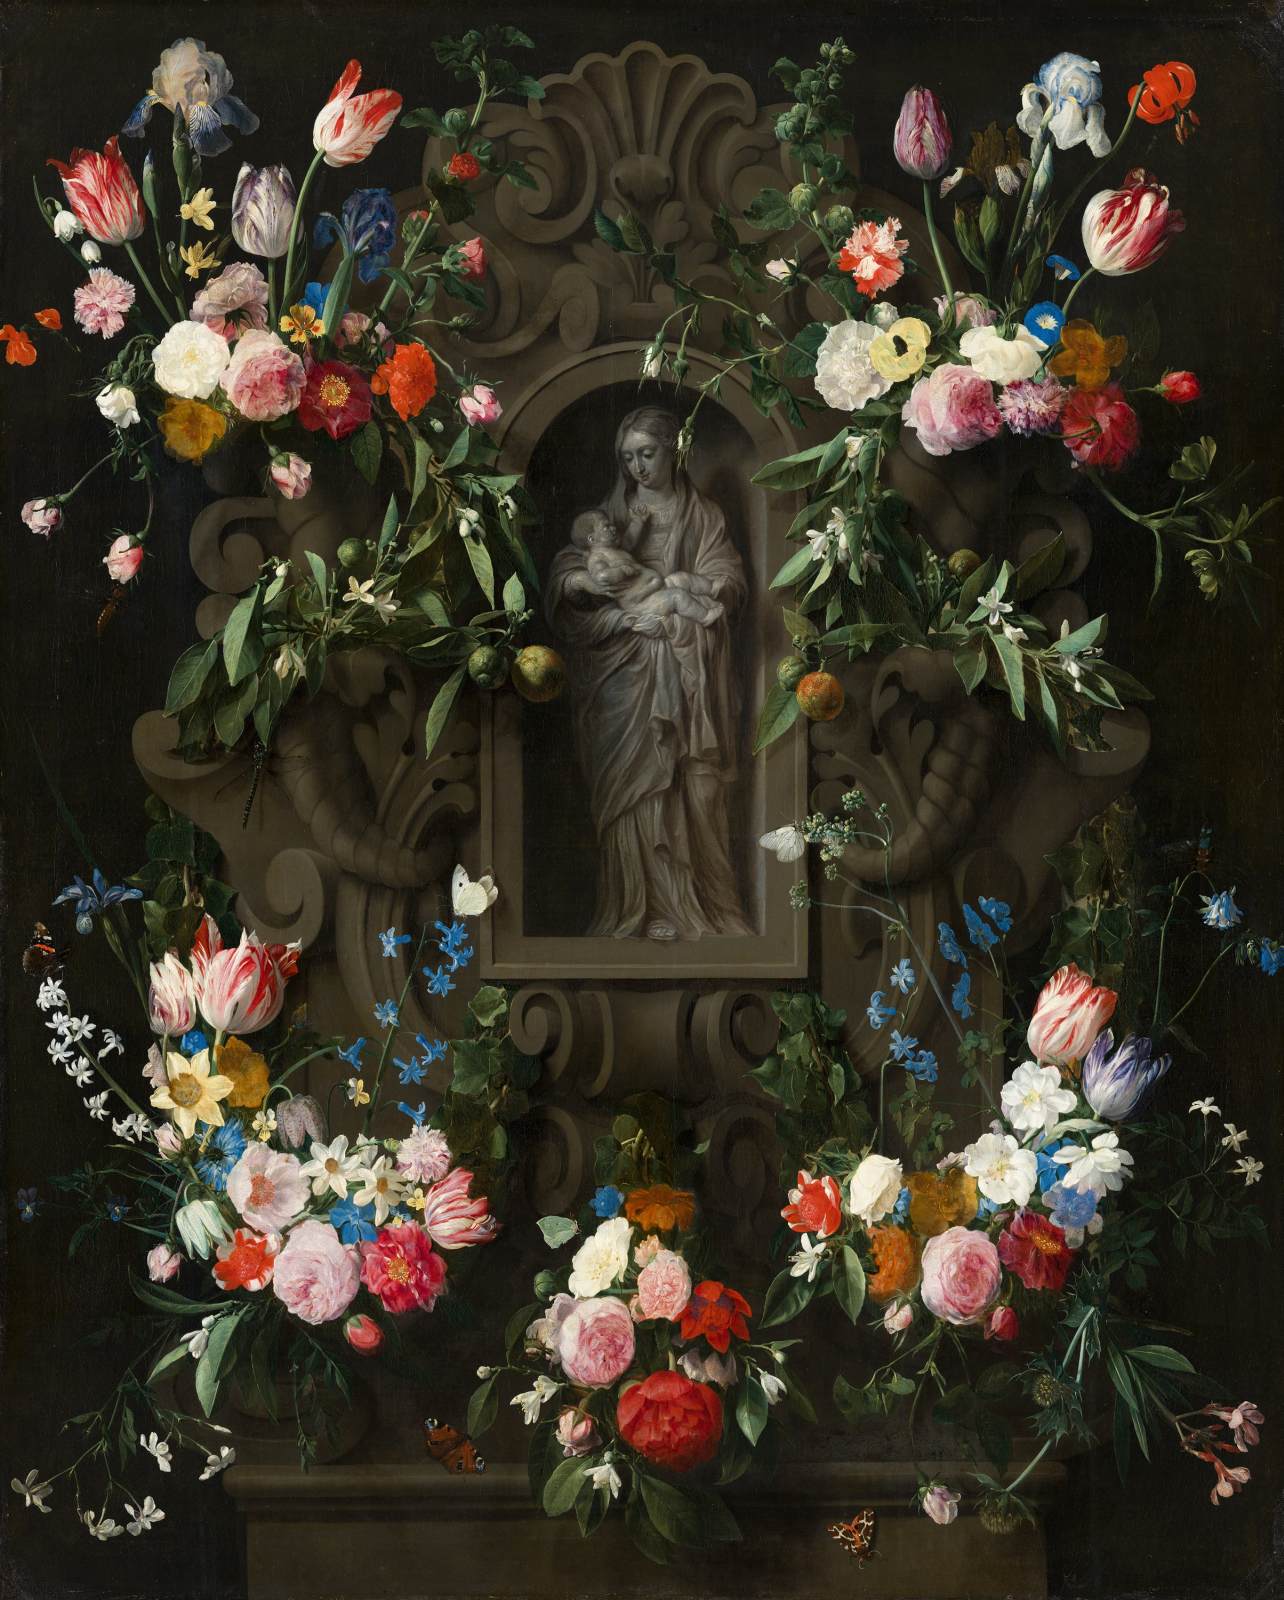 Guirlanda de flores em torno de uma escultura da Virgem Maria